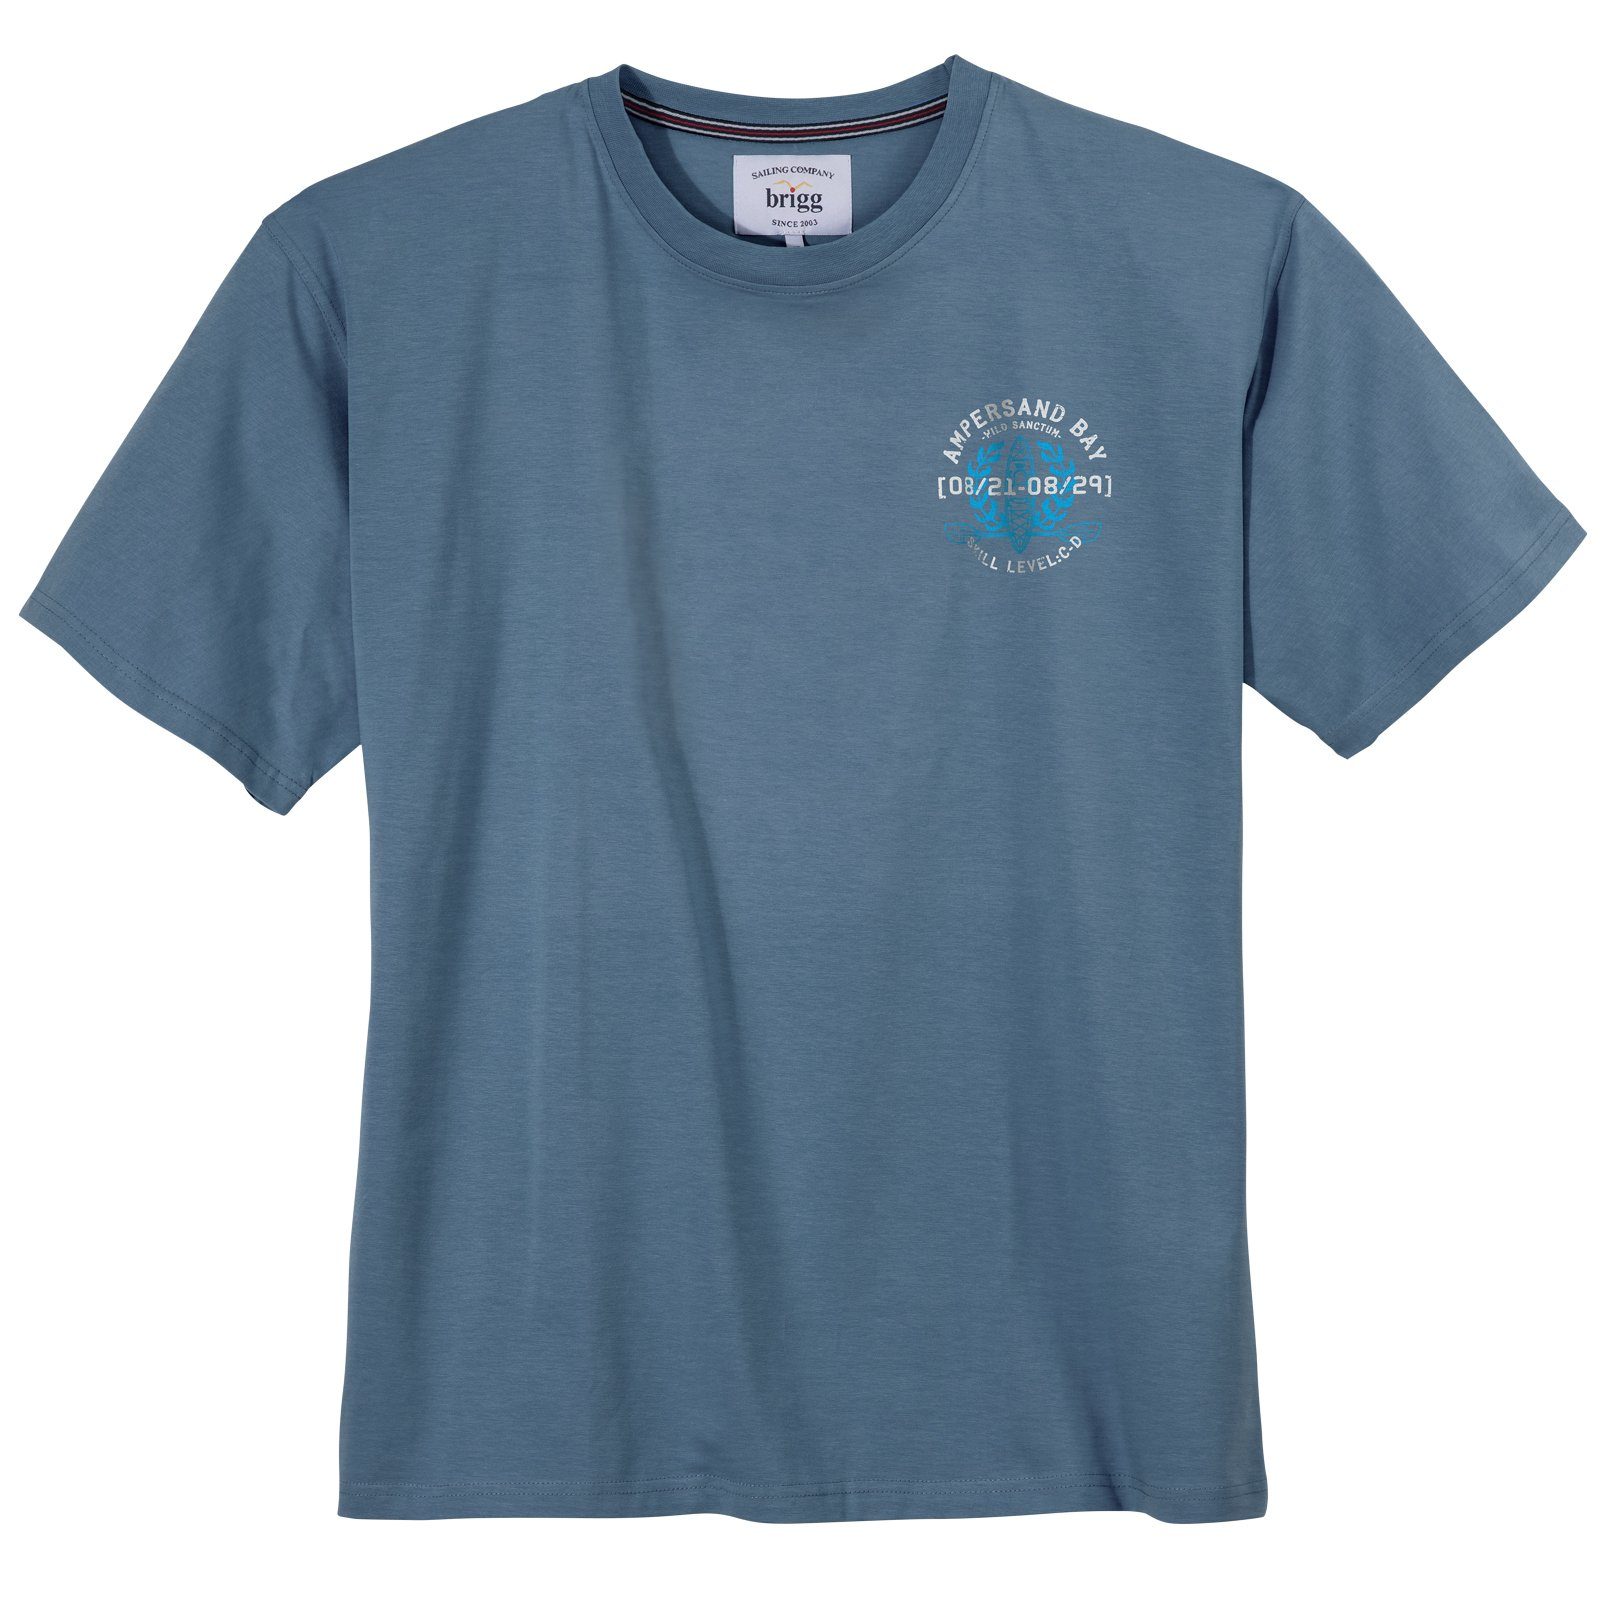 Brigg Rundhalsshirt Große Größen Herren T-Shirt blau melange maritim Brigg